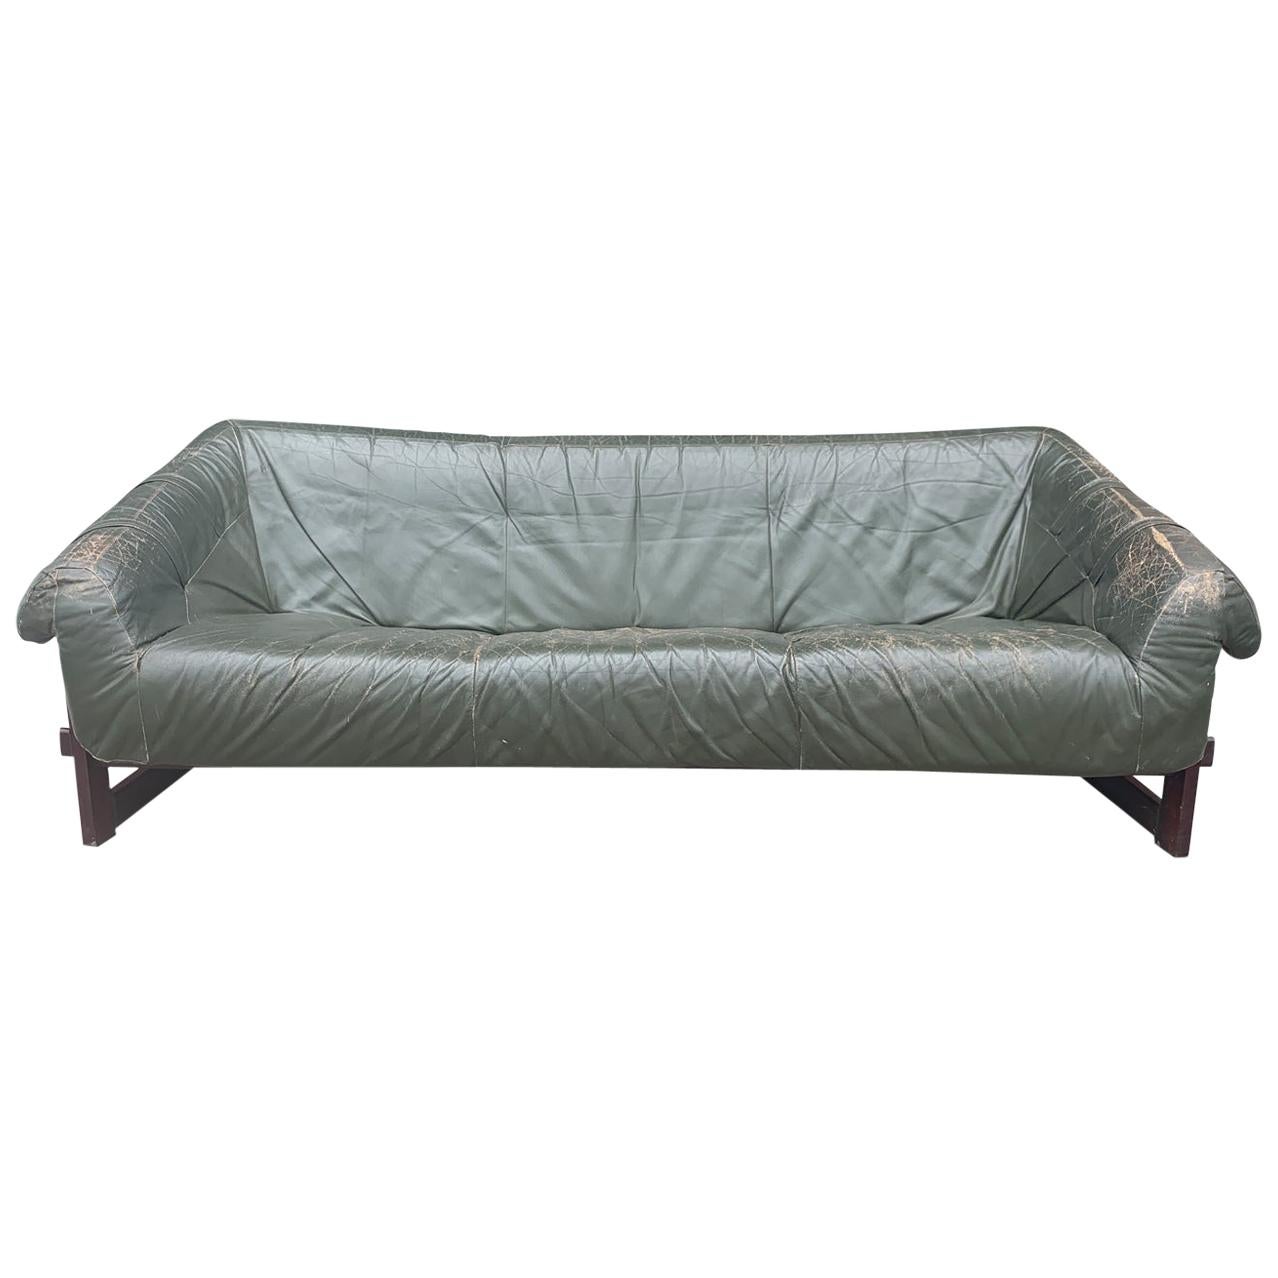 Percival Lafer Brazilian Sofa with Dark Green Leather